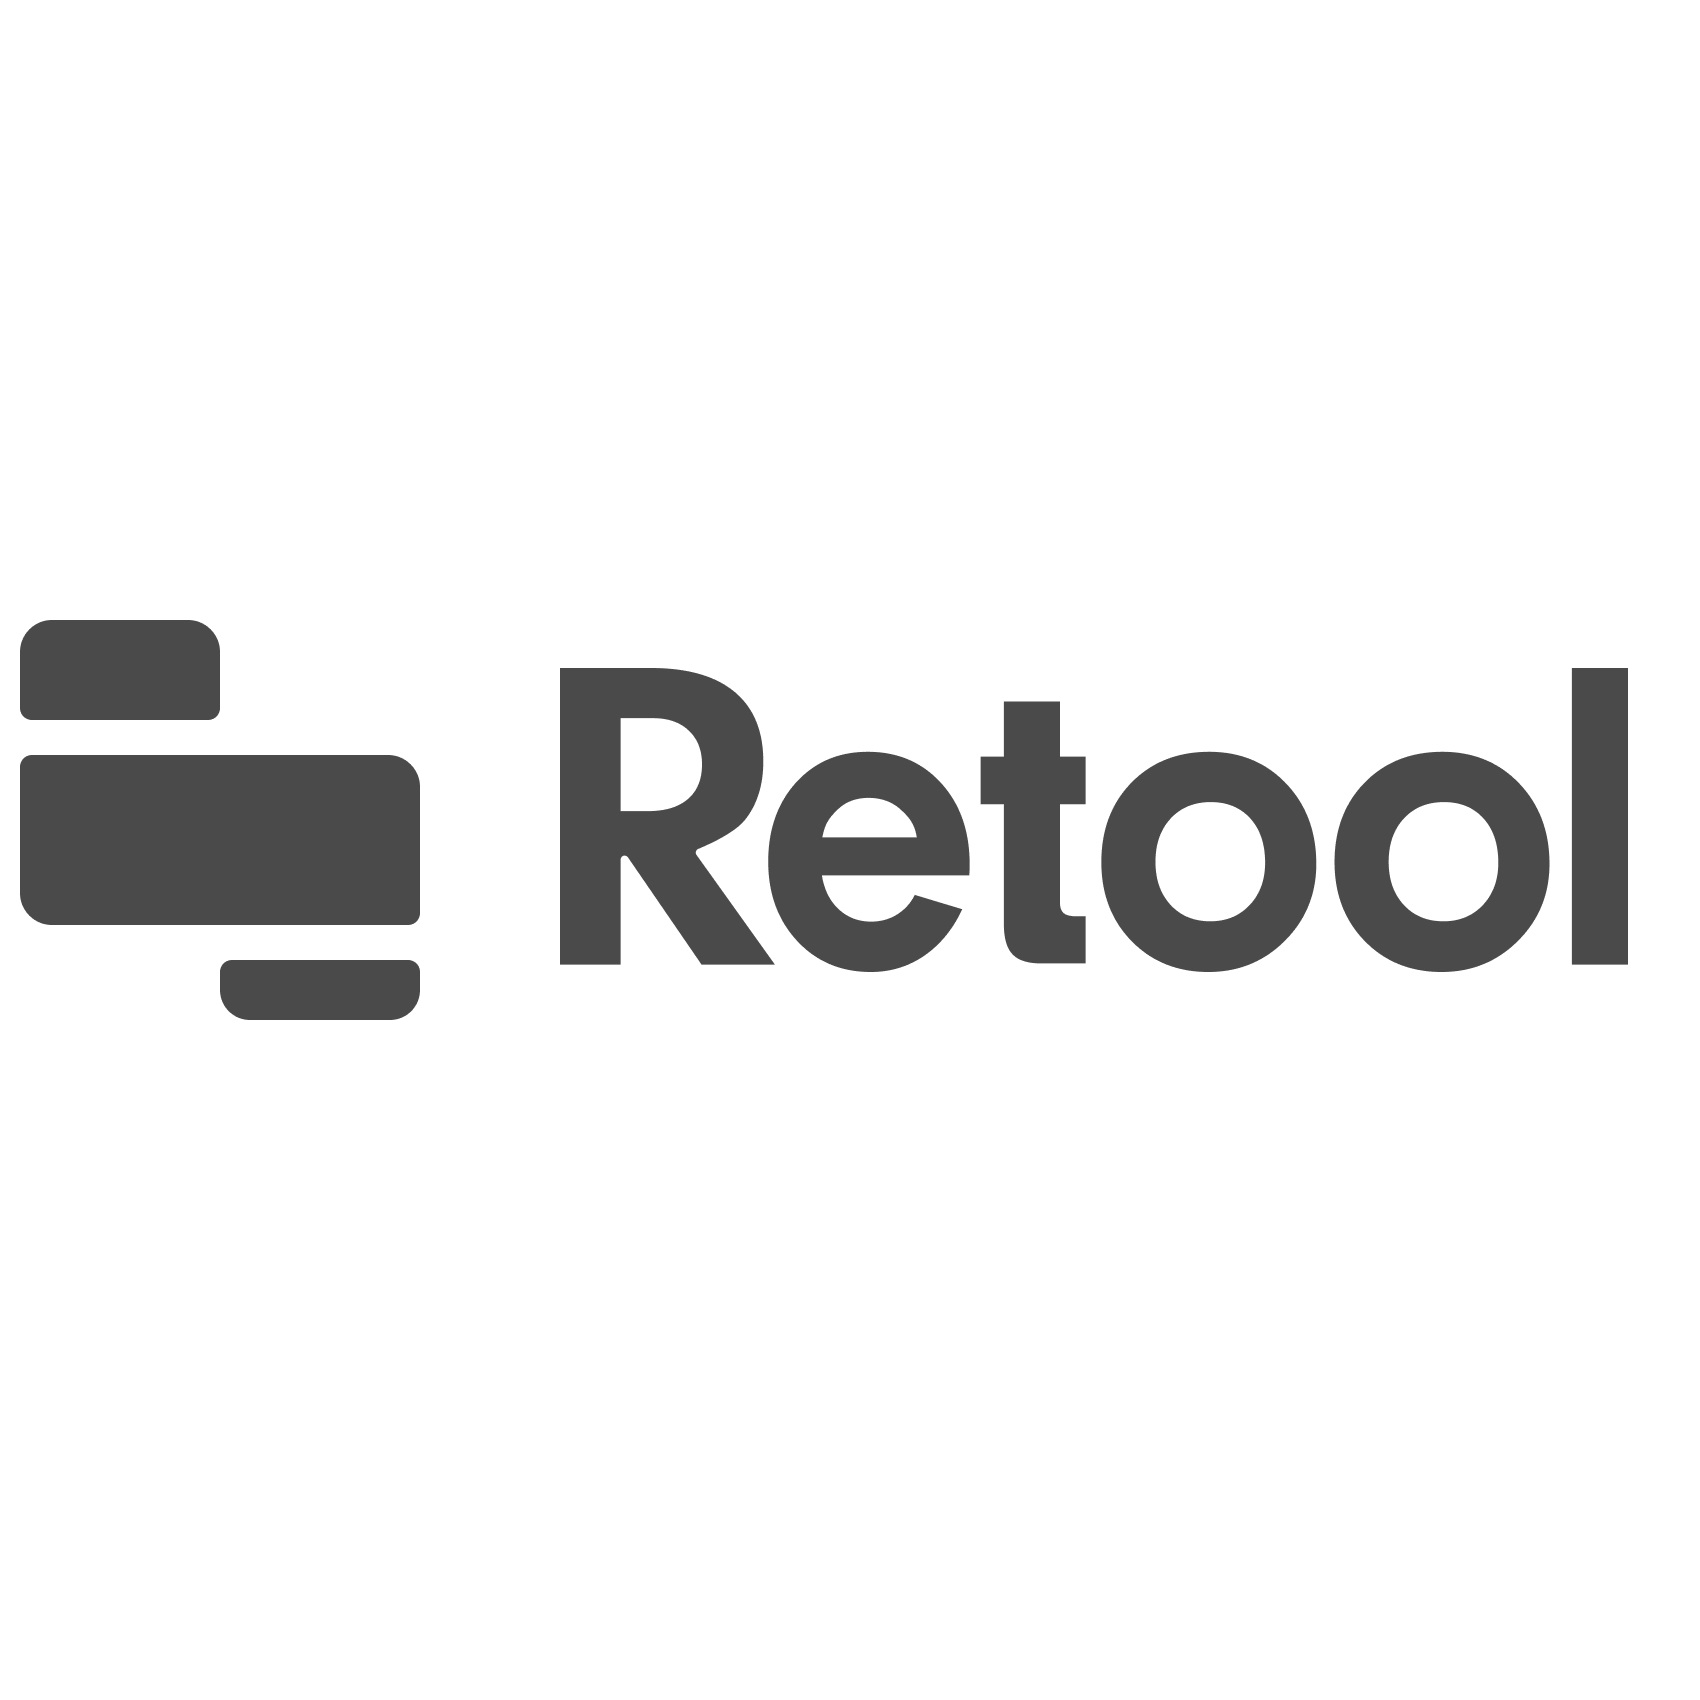 Retool - Logo